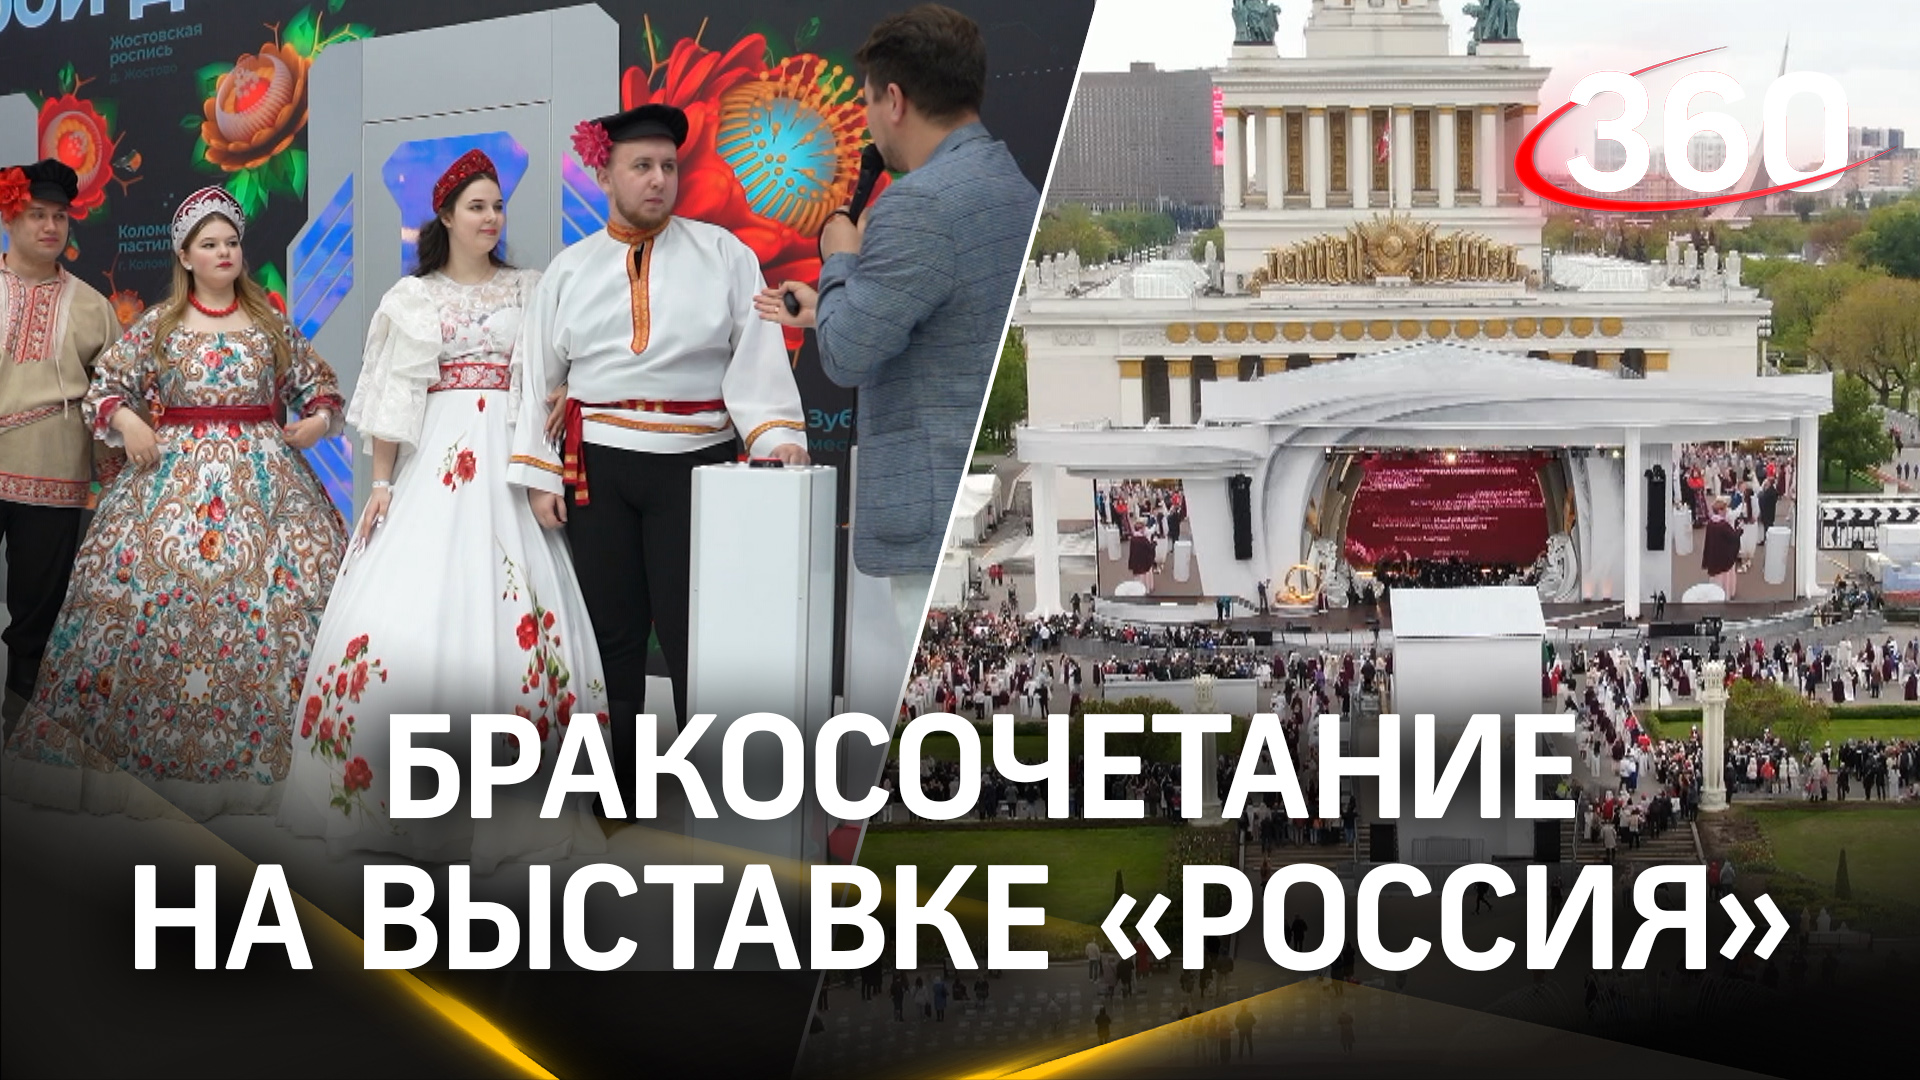 Более 150 пар - самую массовую церемонию бракосочетания провели на выставке «Россия»